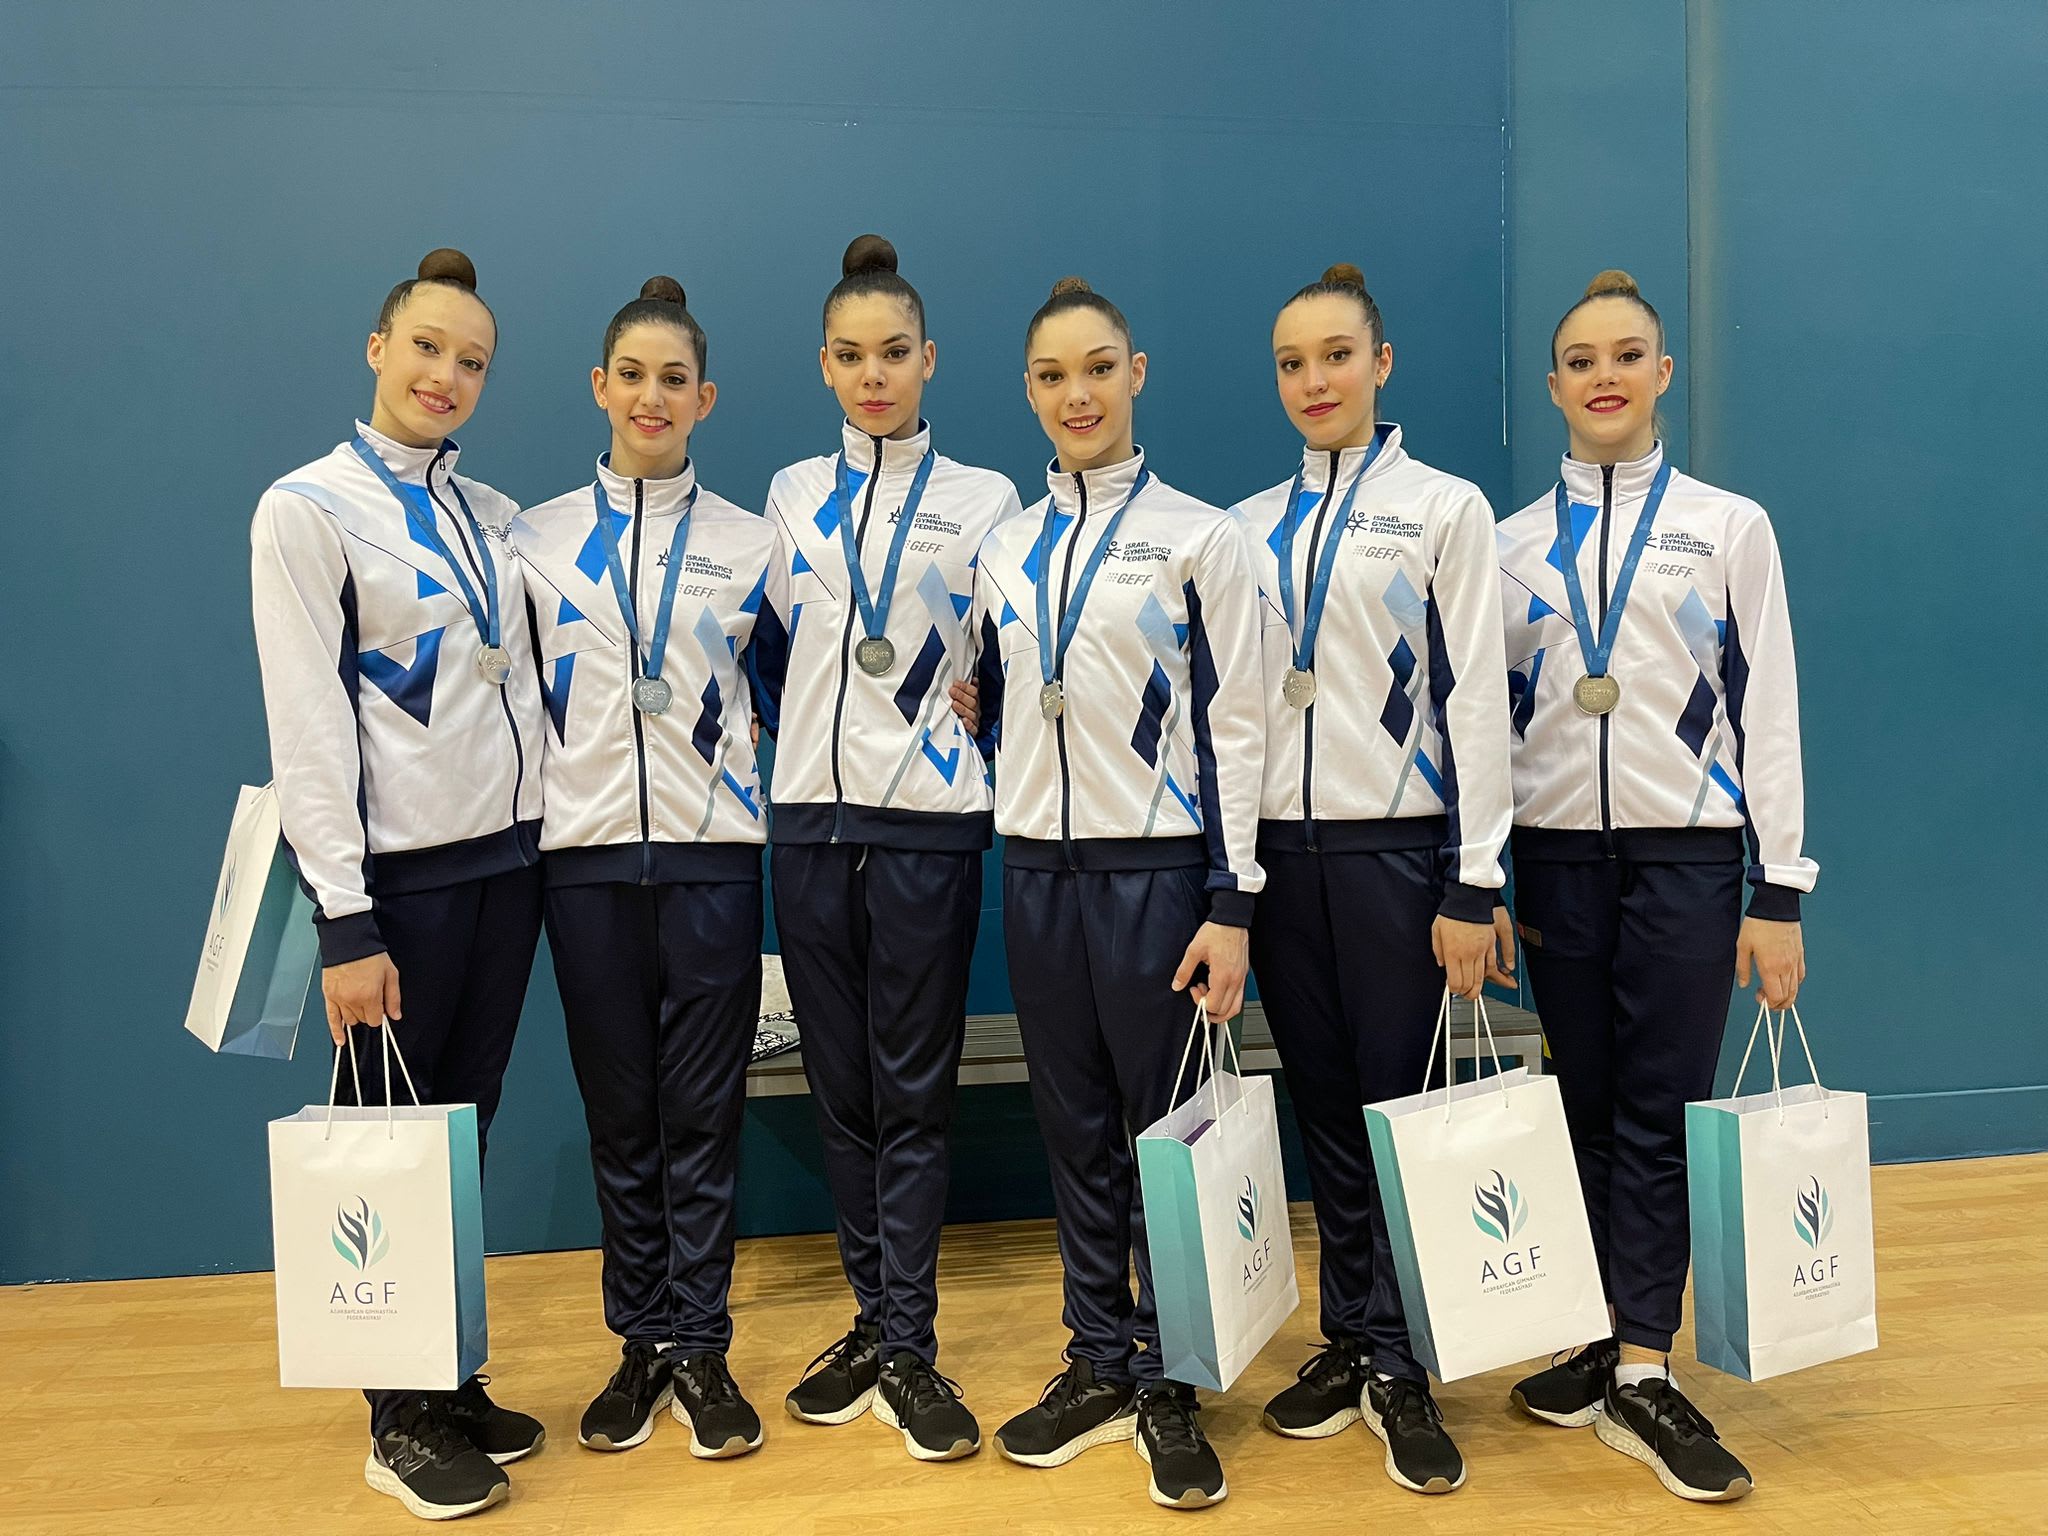 התעמלות אמנותית: נבחרת ישראל זכתה במדליית כסף בקרב-רב בגביע העולם בבאקו